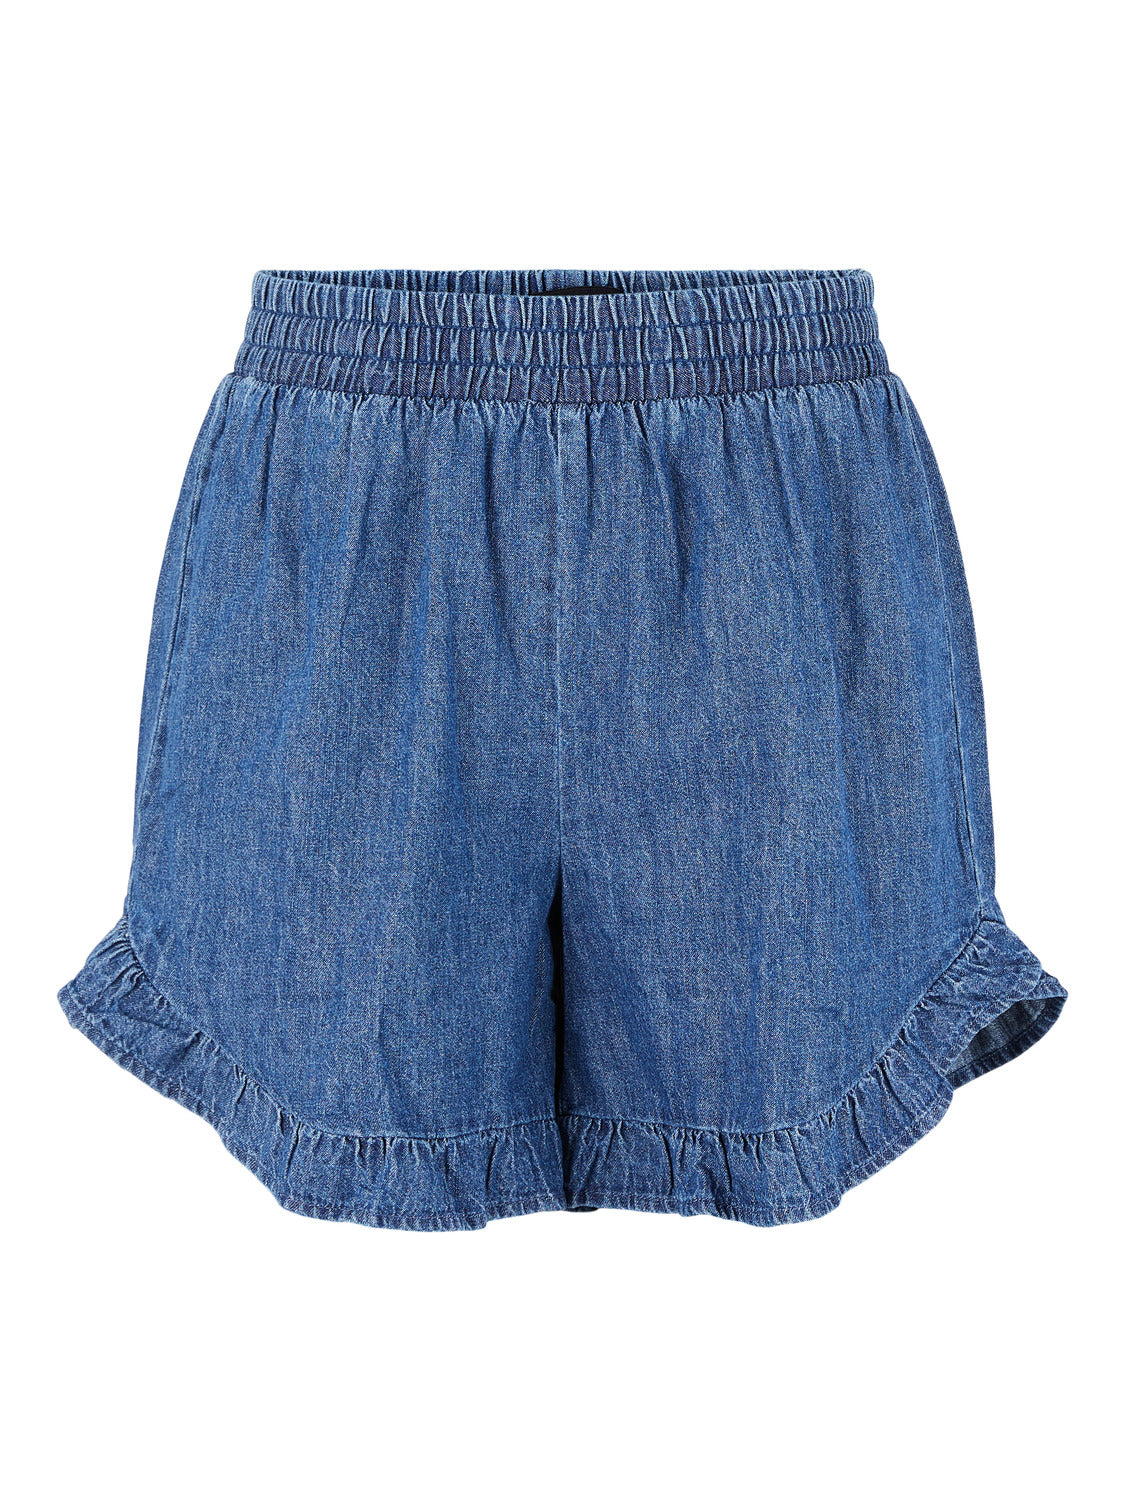 PCVIBE Shorts - Medium Blue Denim